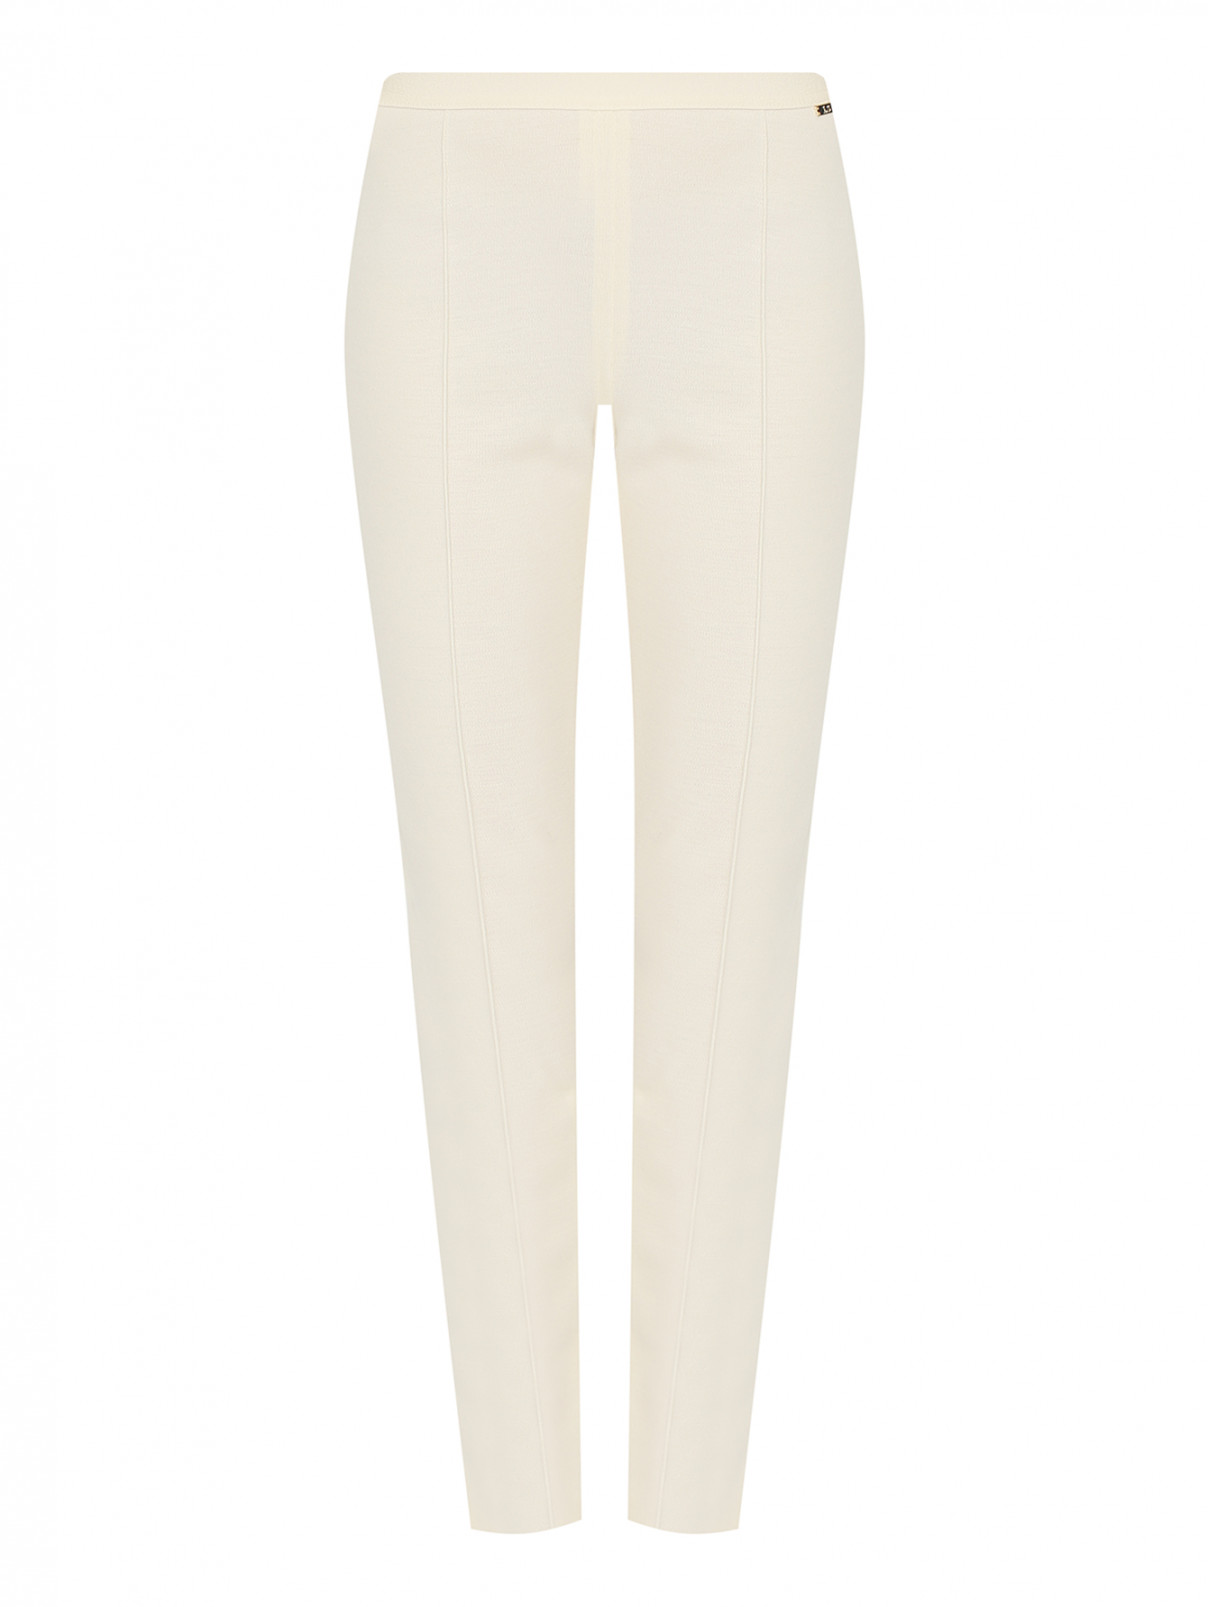 Однотонные брюки из шерсти на резинке Luisa Spagnoli  –  Общий вид  – Цвет:  Белый